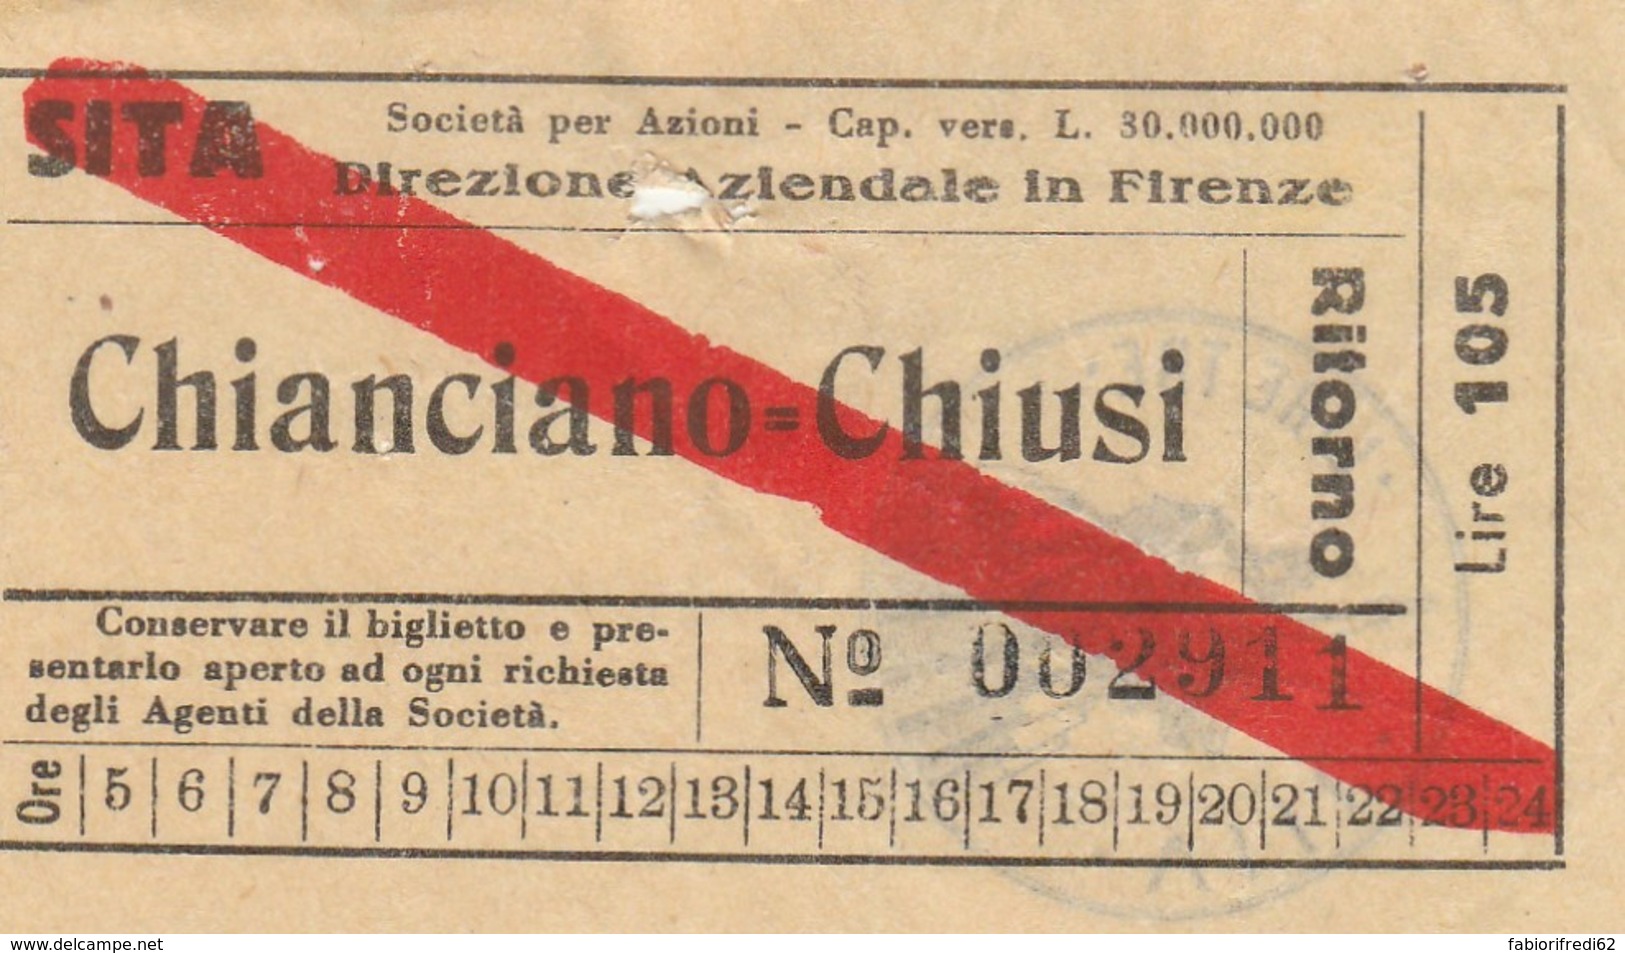 CHIANCIANO CHIUSI LIRE 105 BIGLIETTO AUTOLINEE (FX496 - Europa